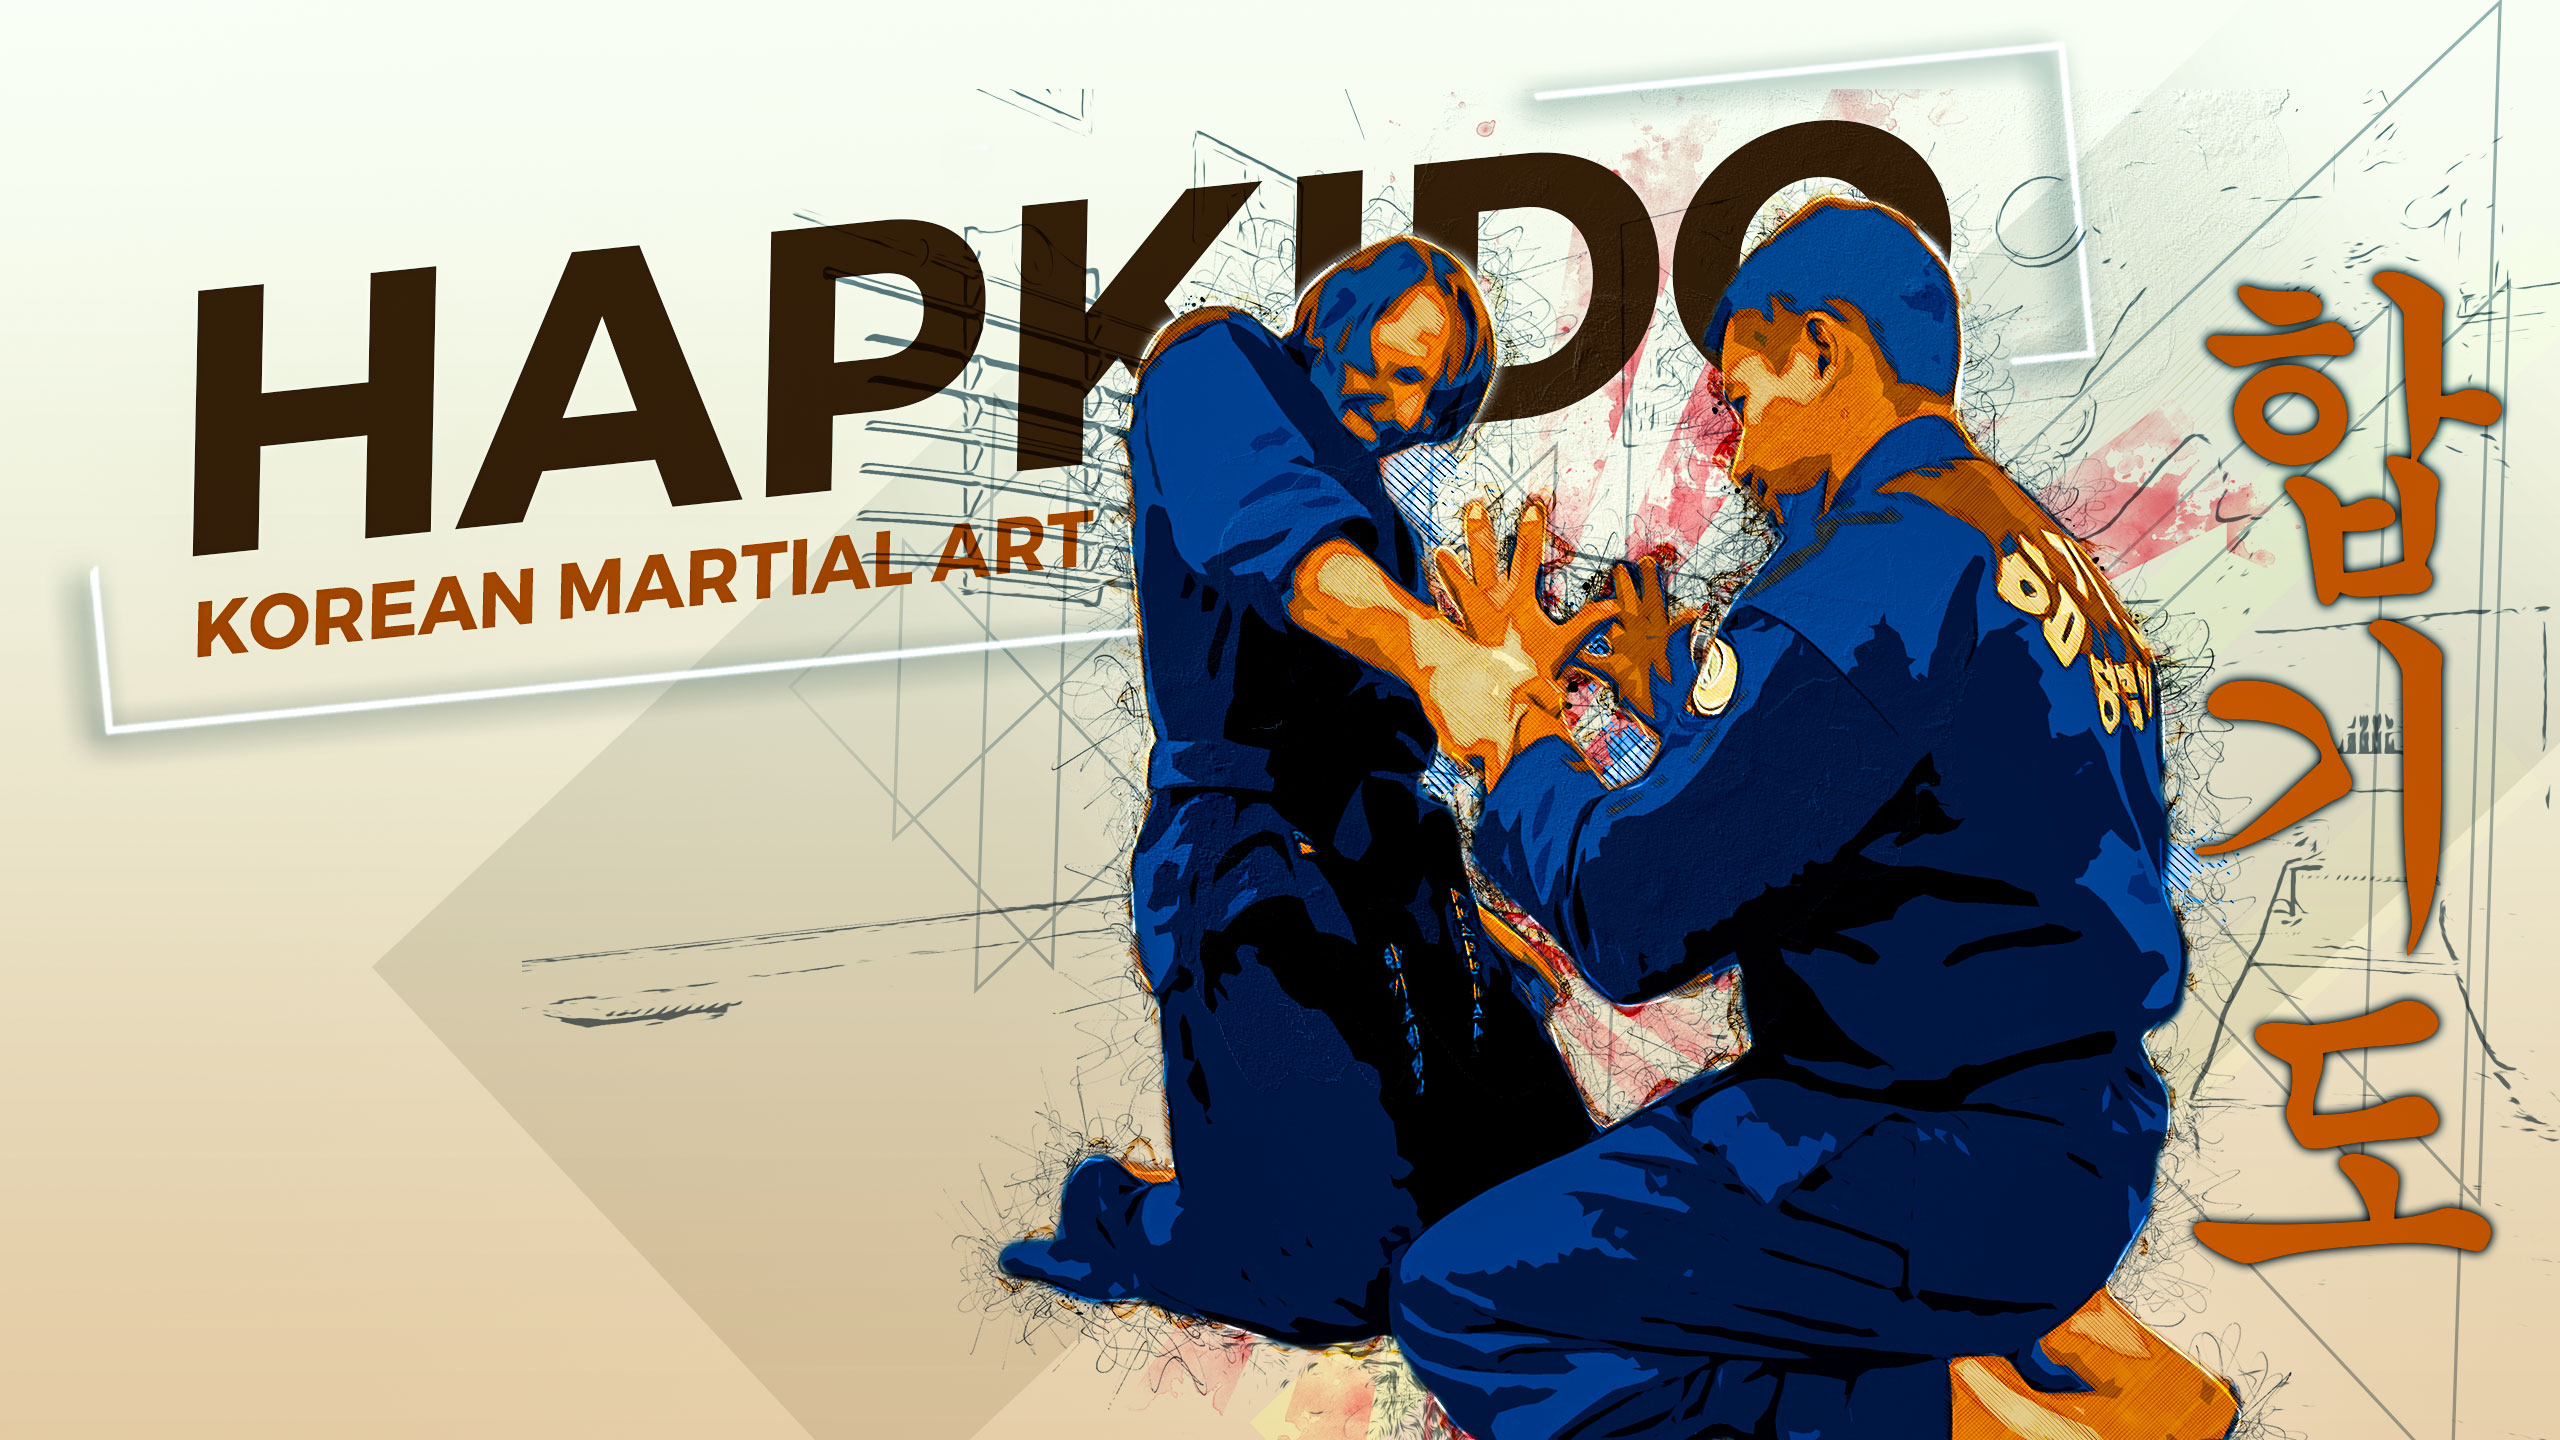 General 2560x1440 hapkido korean martial arts men martial arts artwork